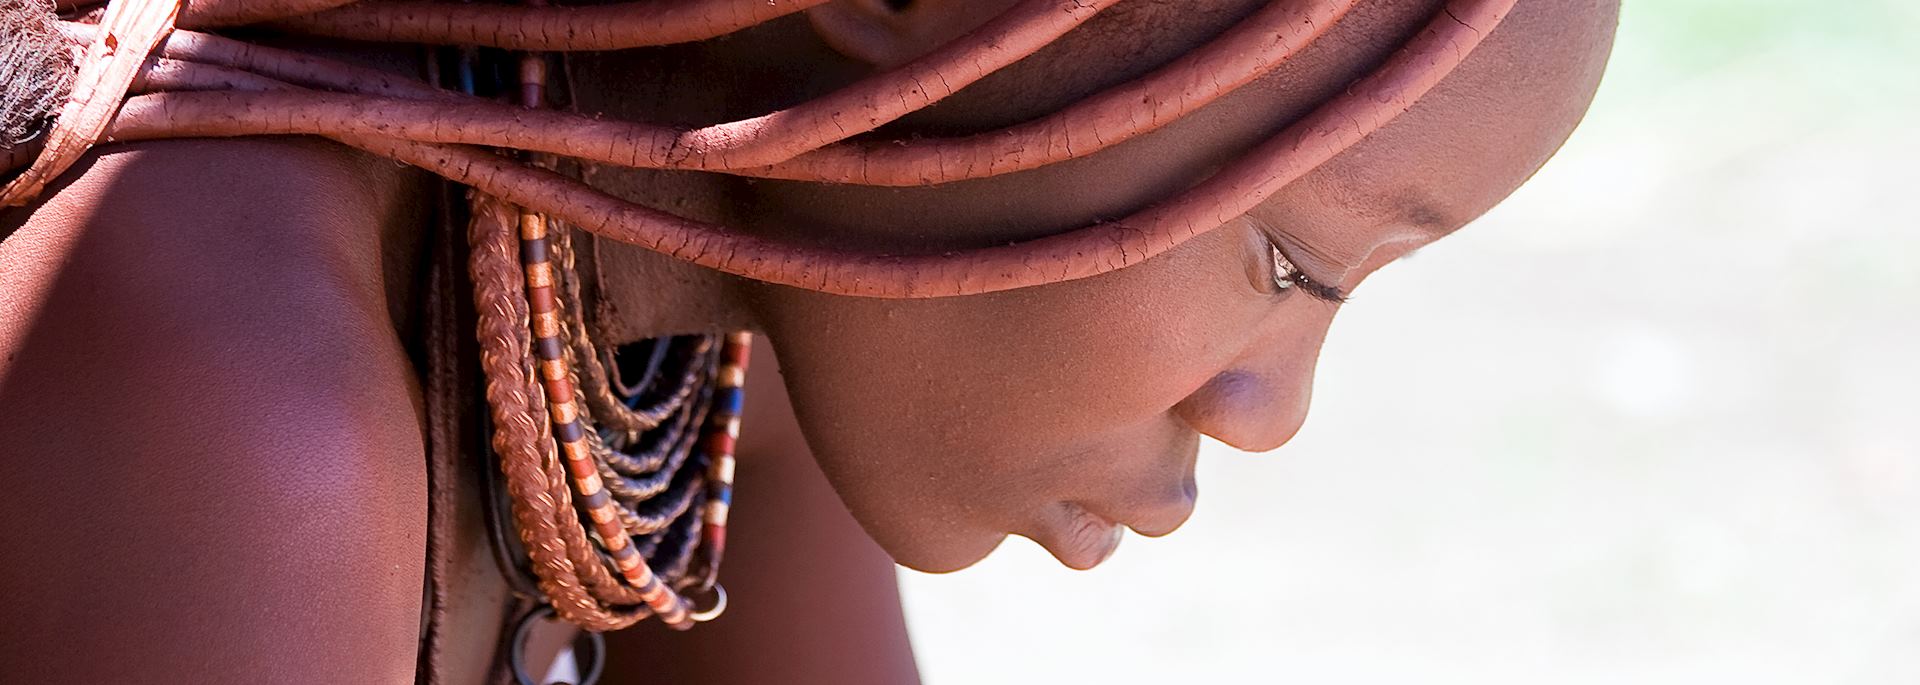 Himba woman, Kaokoland